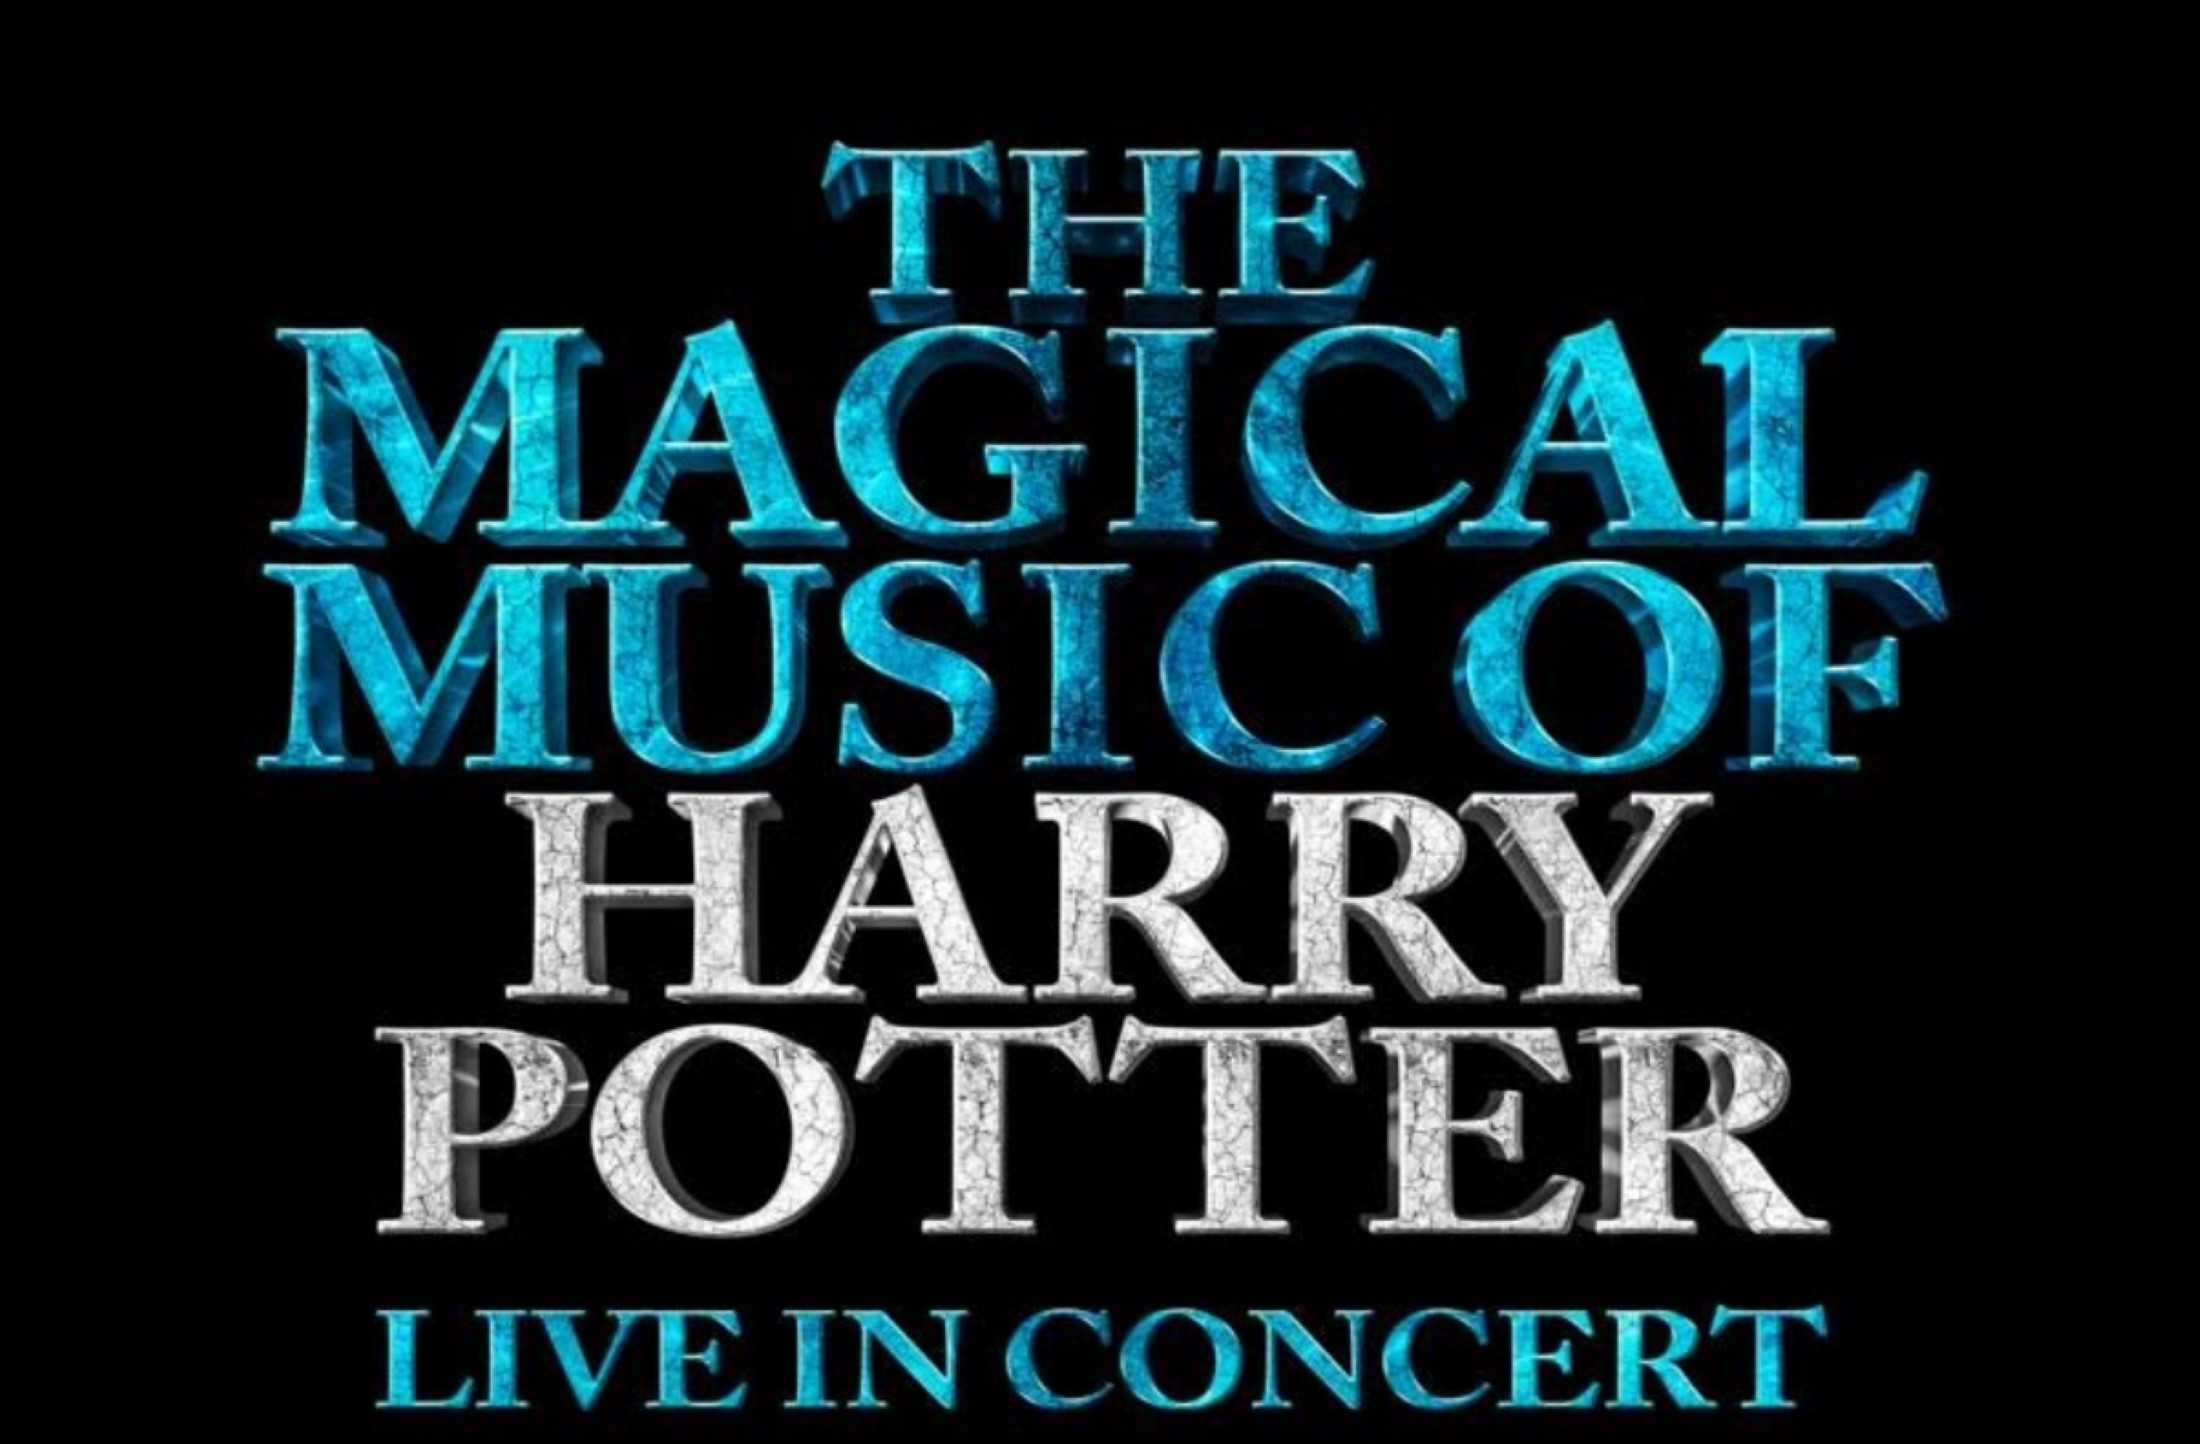 De beste liedjes en muziek van alle Harry Potterfilms komen naar de stad Gent g